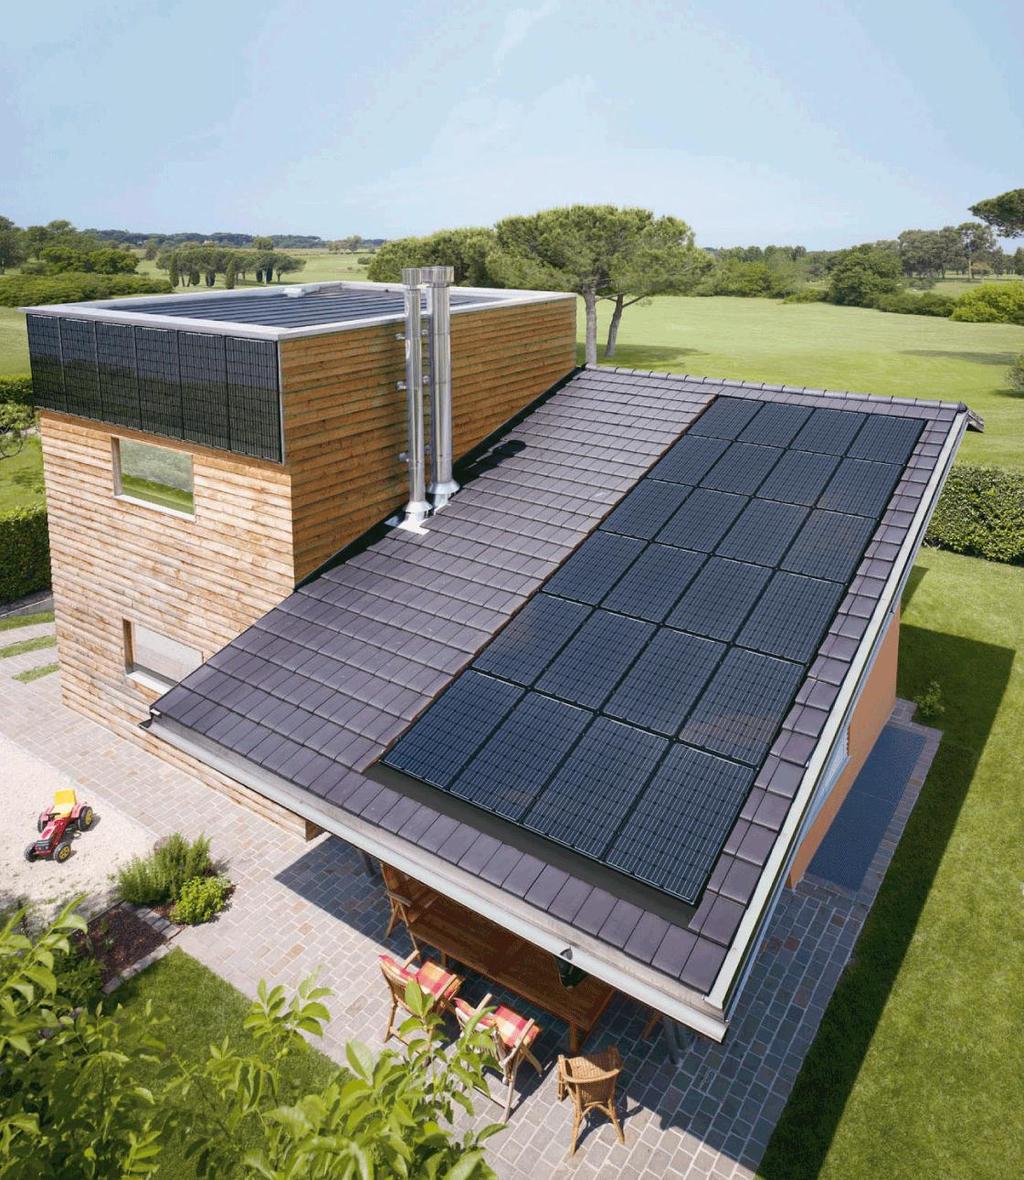 Perfektion in Design und Technik. Die innovative Indach-Solarsystemlösung vereint besondere Anforderungen an eine zukunftsorientierte Energieerzeugung mit gehobenen Ansprüchen an Optik und Design.